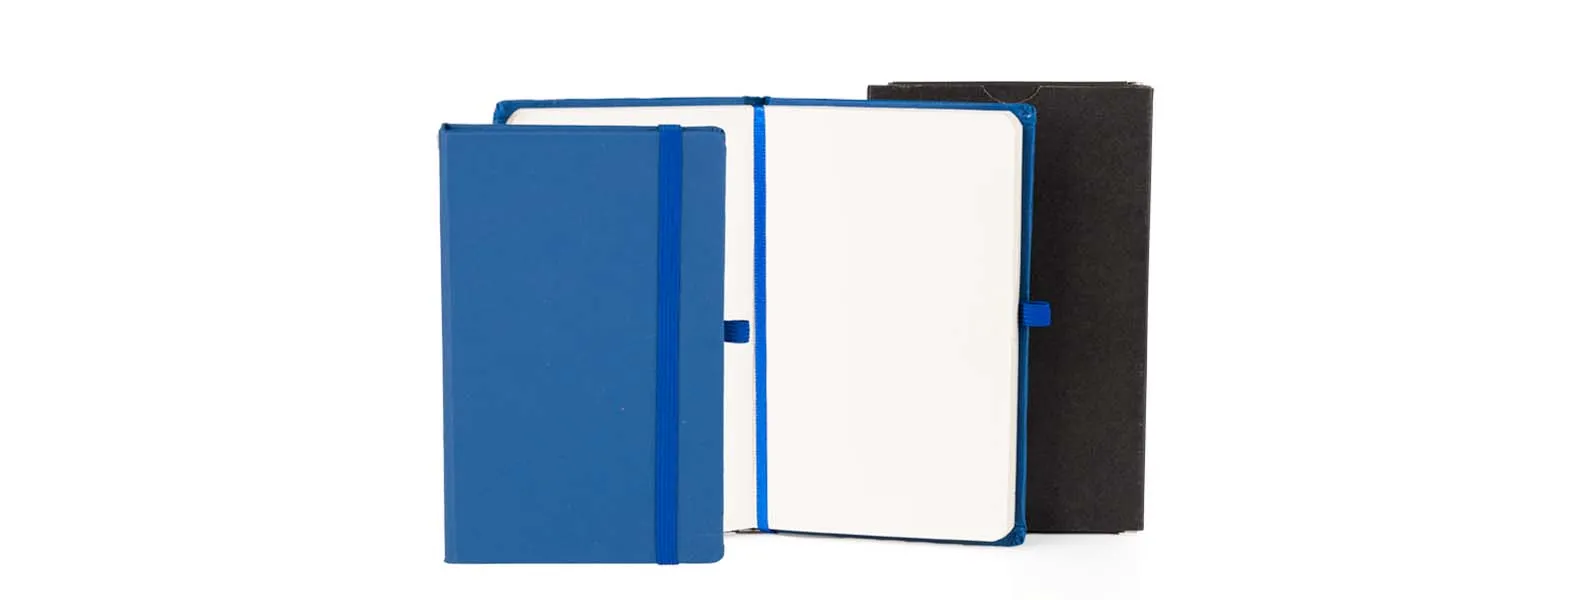 Caderno para anotações azul com capa dura. Conta com 80 folhas não pautadas, marcador de página, porta caneta e elástico para fechamento. Gramatura da folha de 70 g/m2.